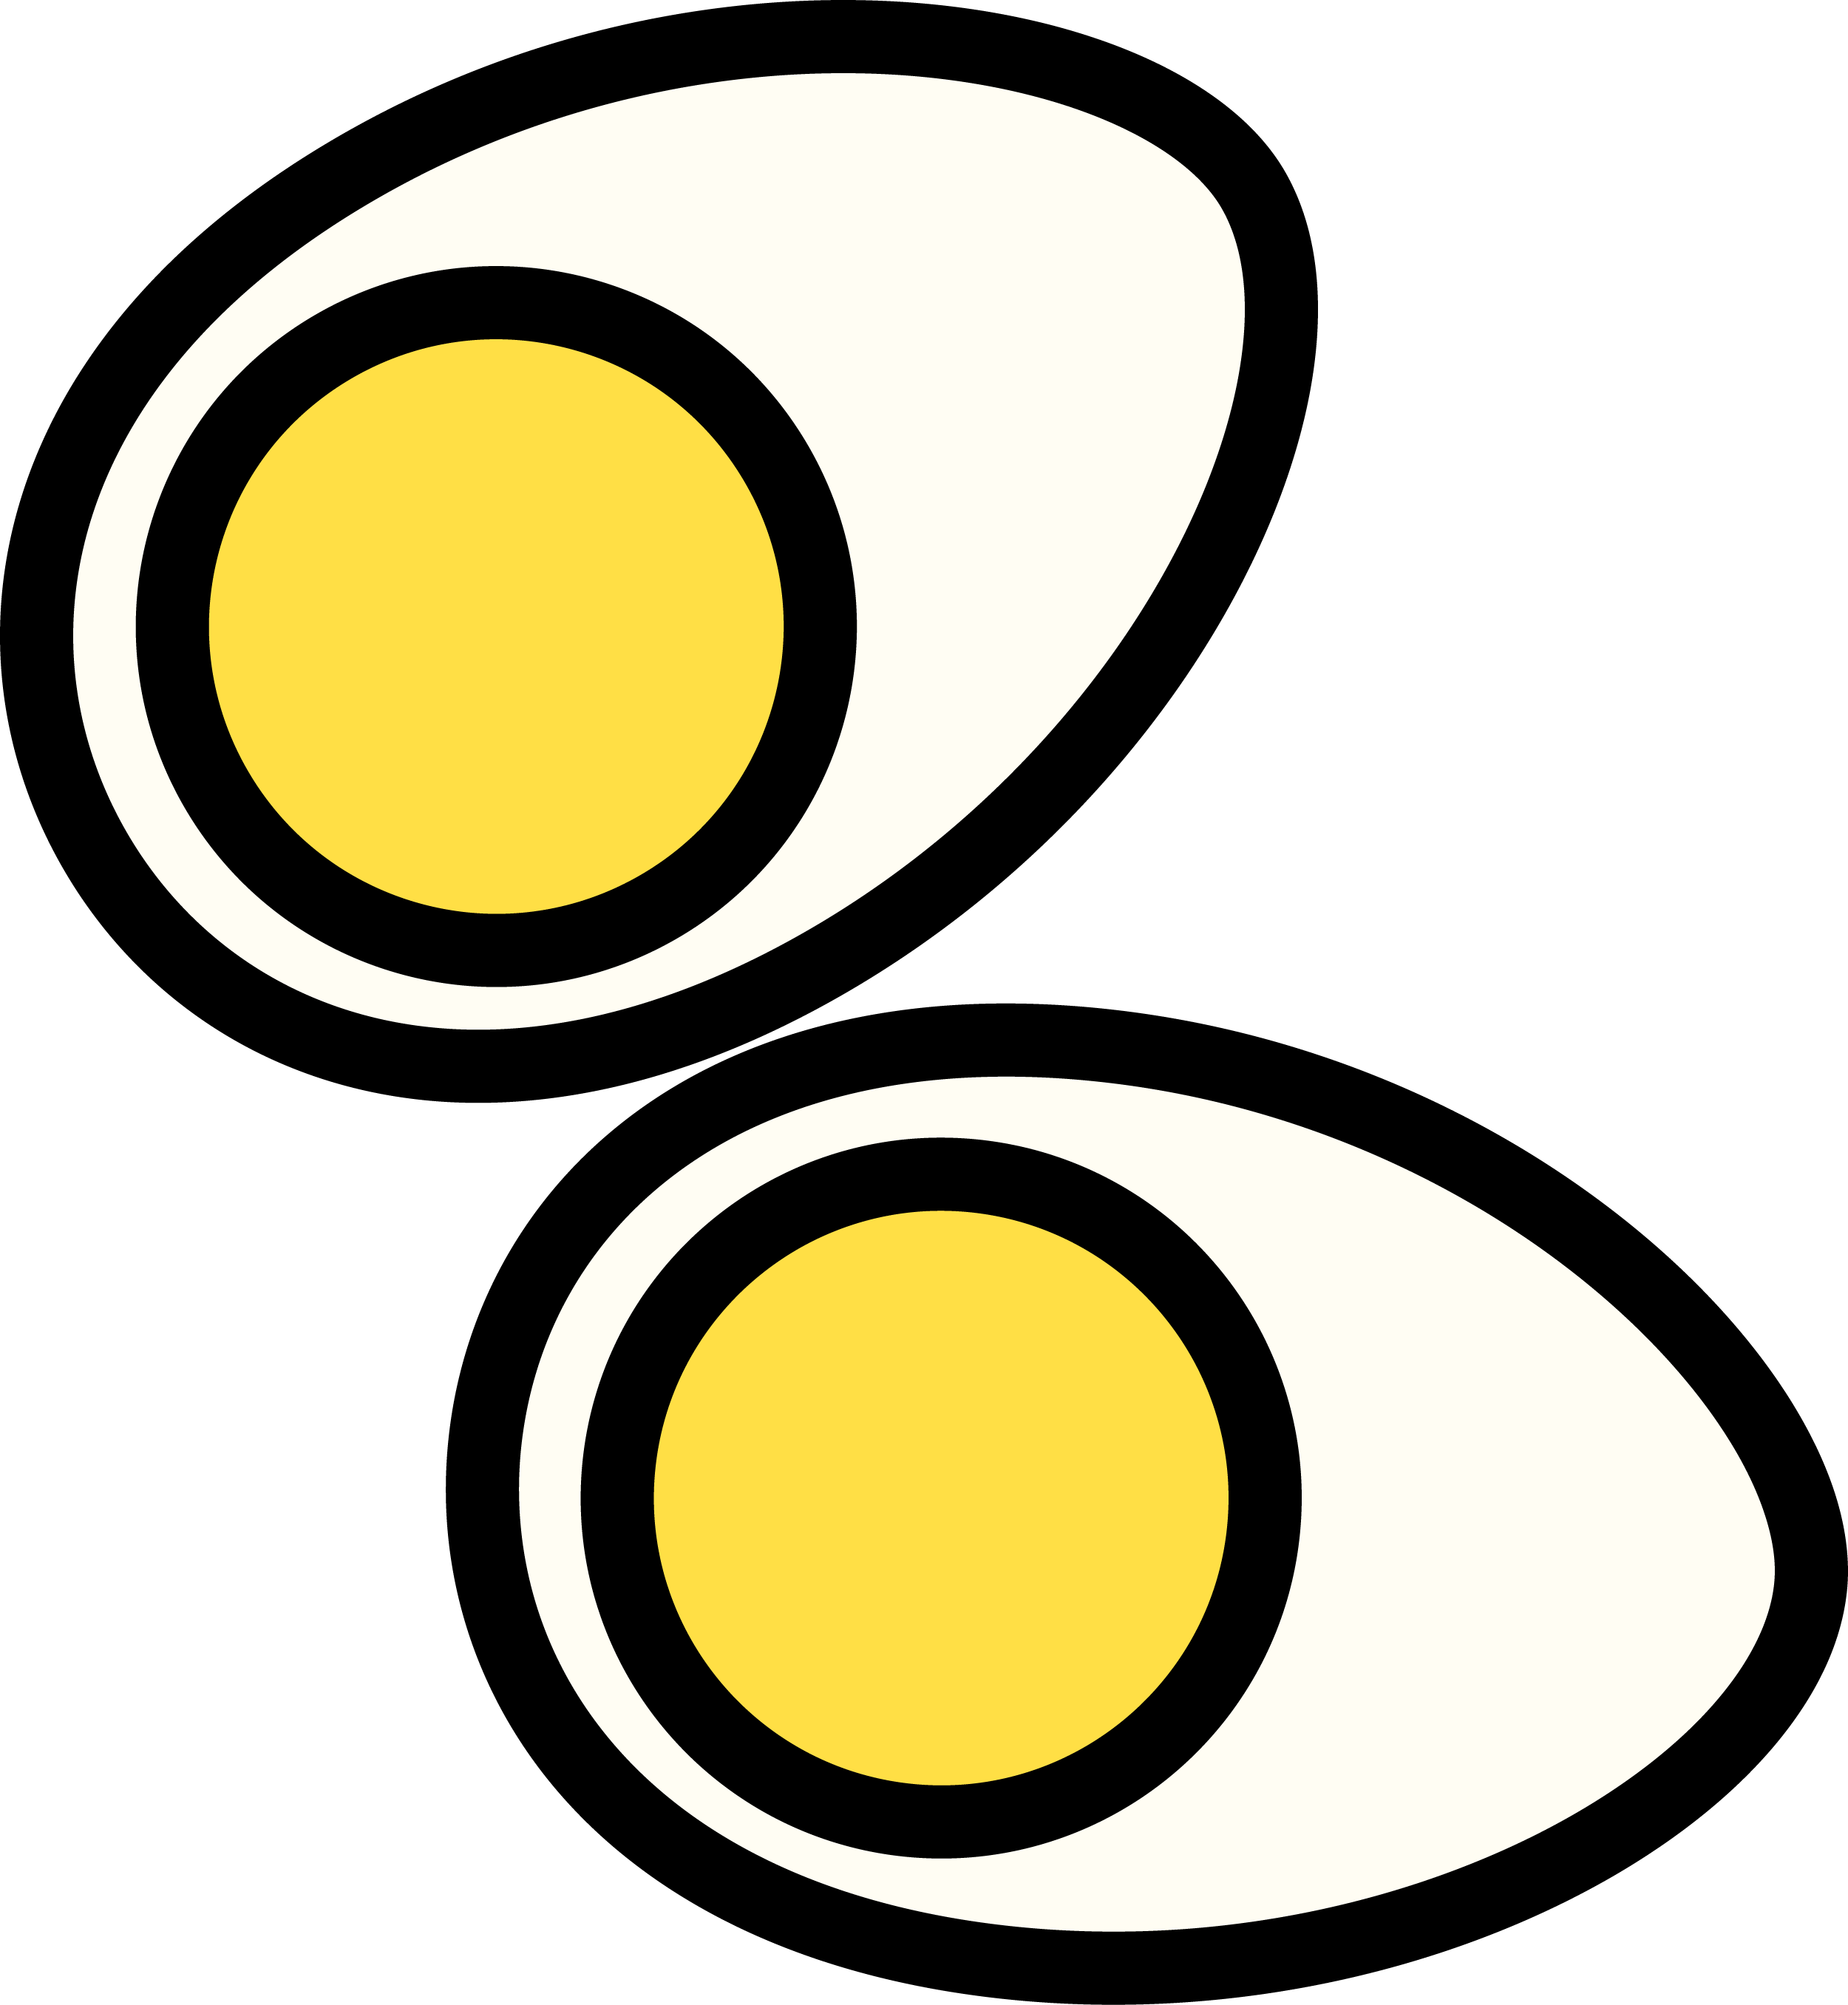 Pair of Eggs Egg Yolks Diet Egg Eggs Clipart Two Slices of Egg PNG